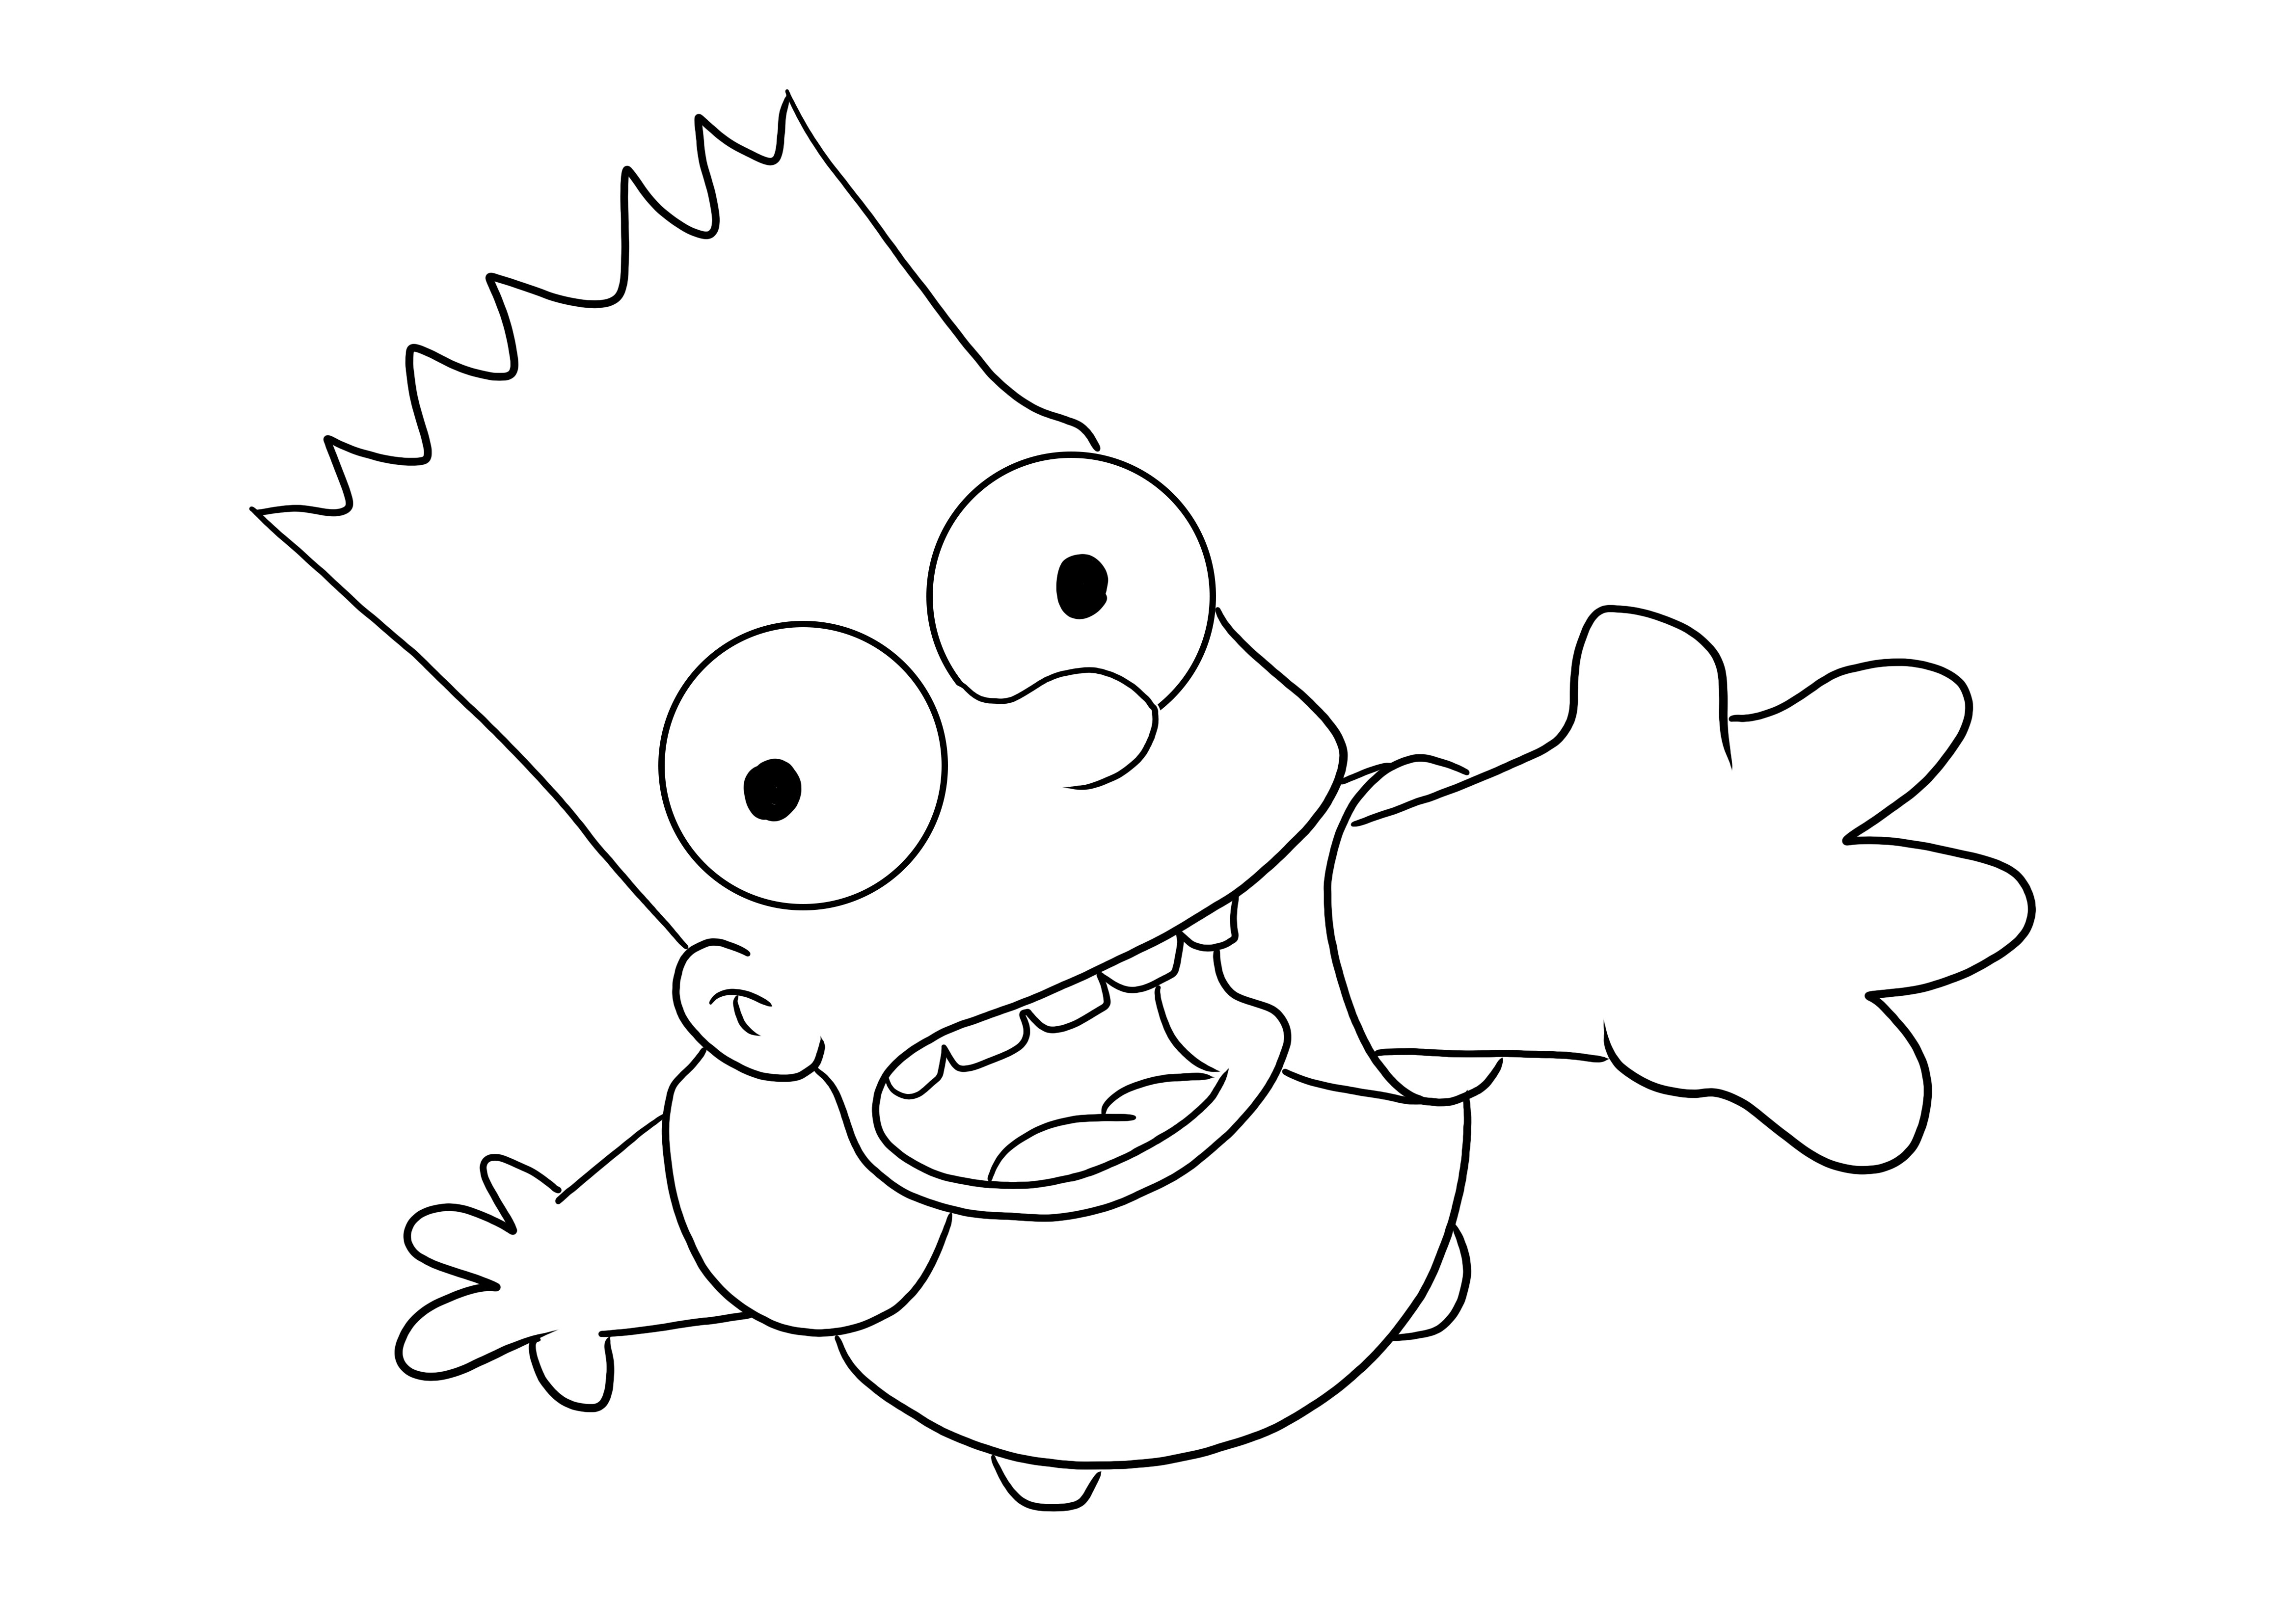 Bart página descargable e imprimible gratis para niños